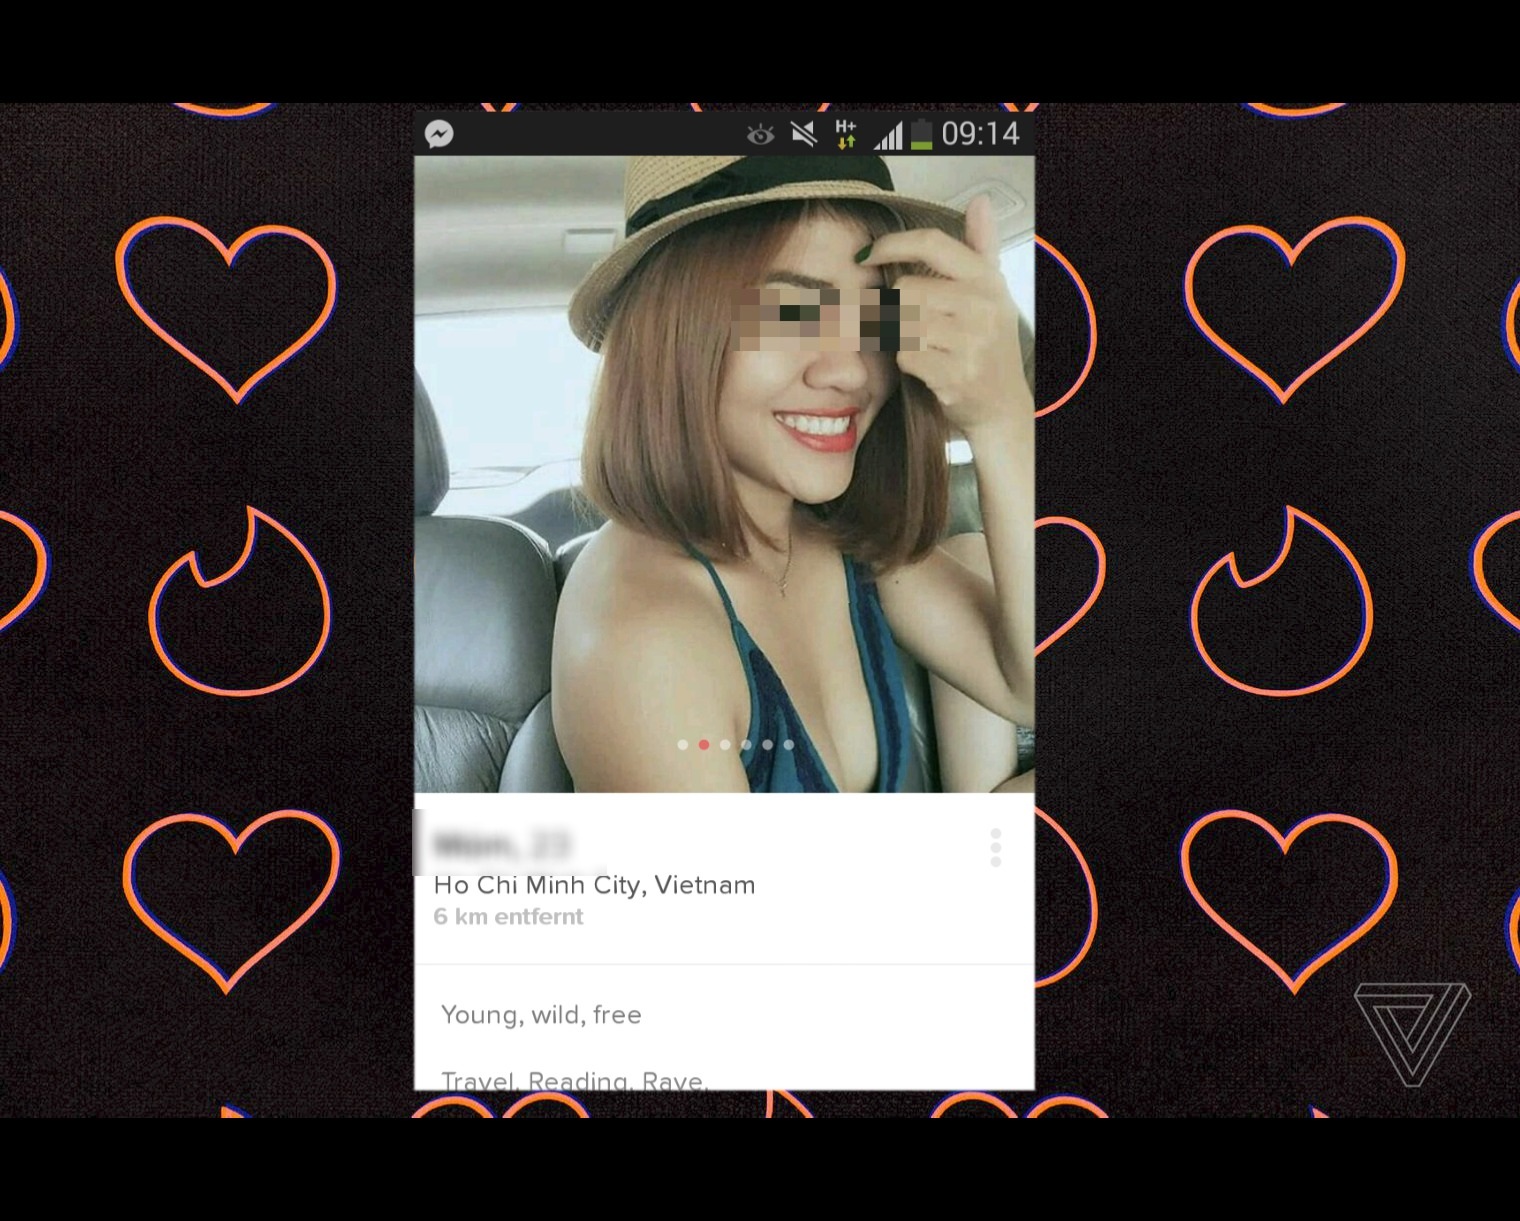 Ứng dụng hẹn hò nổi tiếng Tinder ra mắt phiên bản thu gọn dành riêng cho Việt Nam